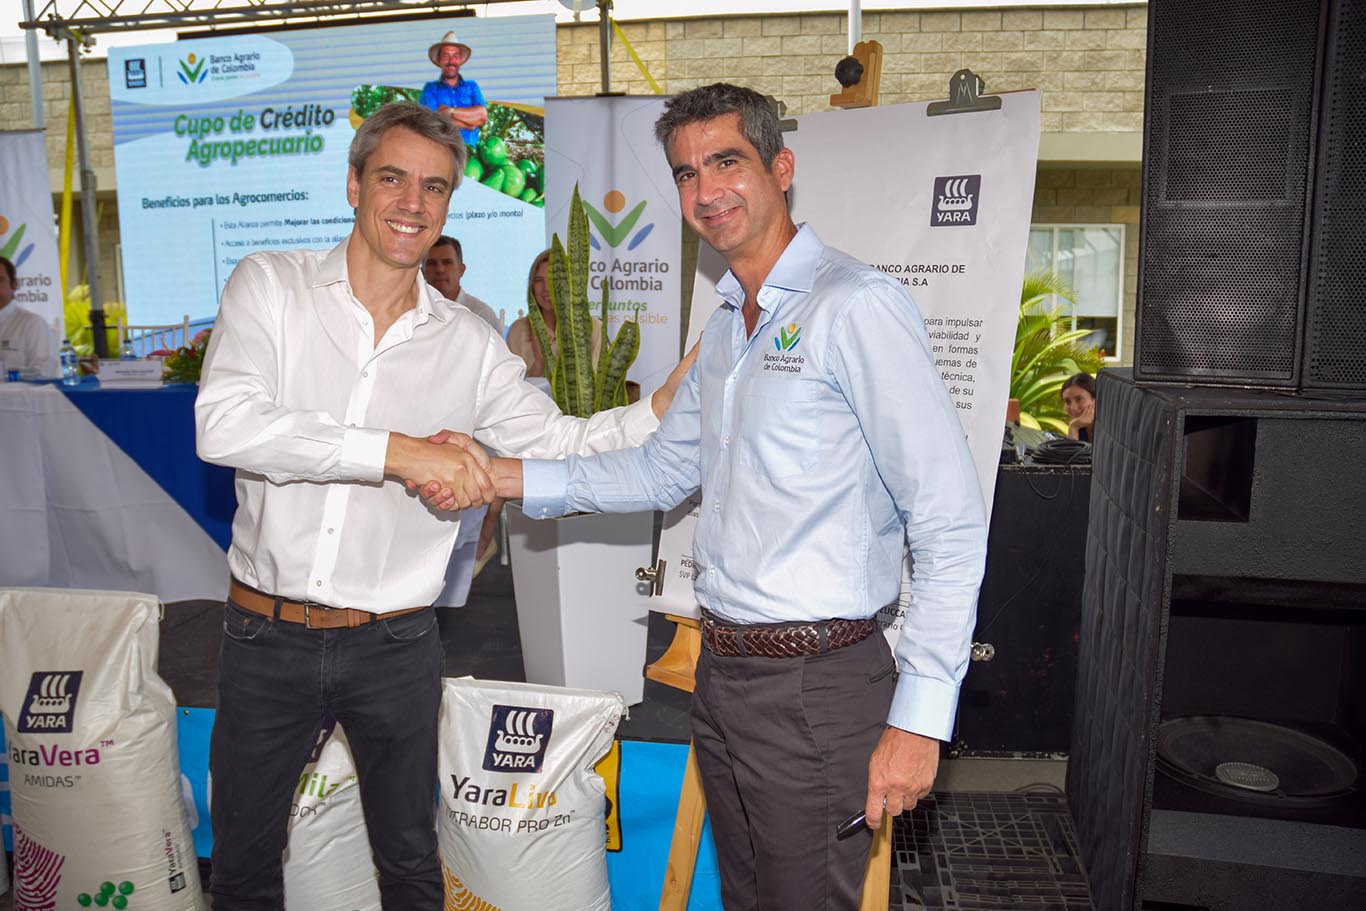 Yara Colombia y el banco agrario anuncian alianza